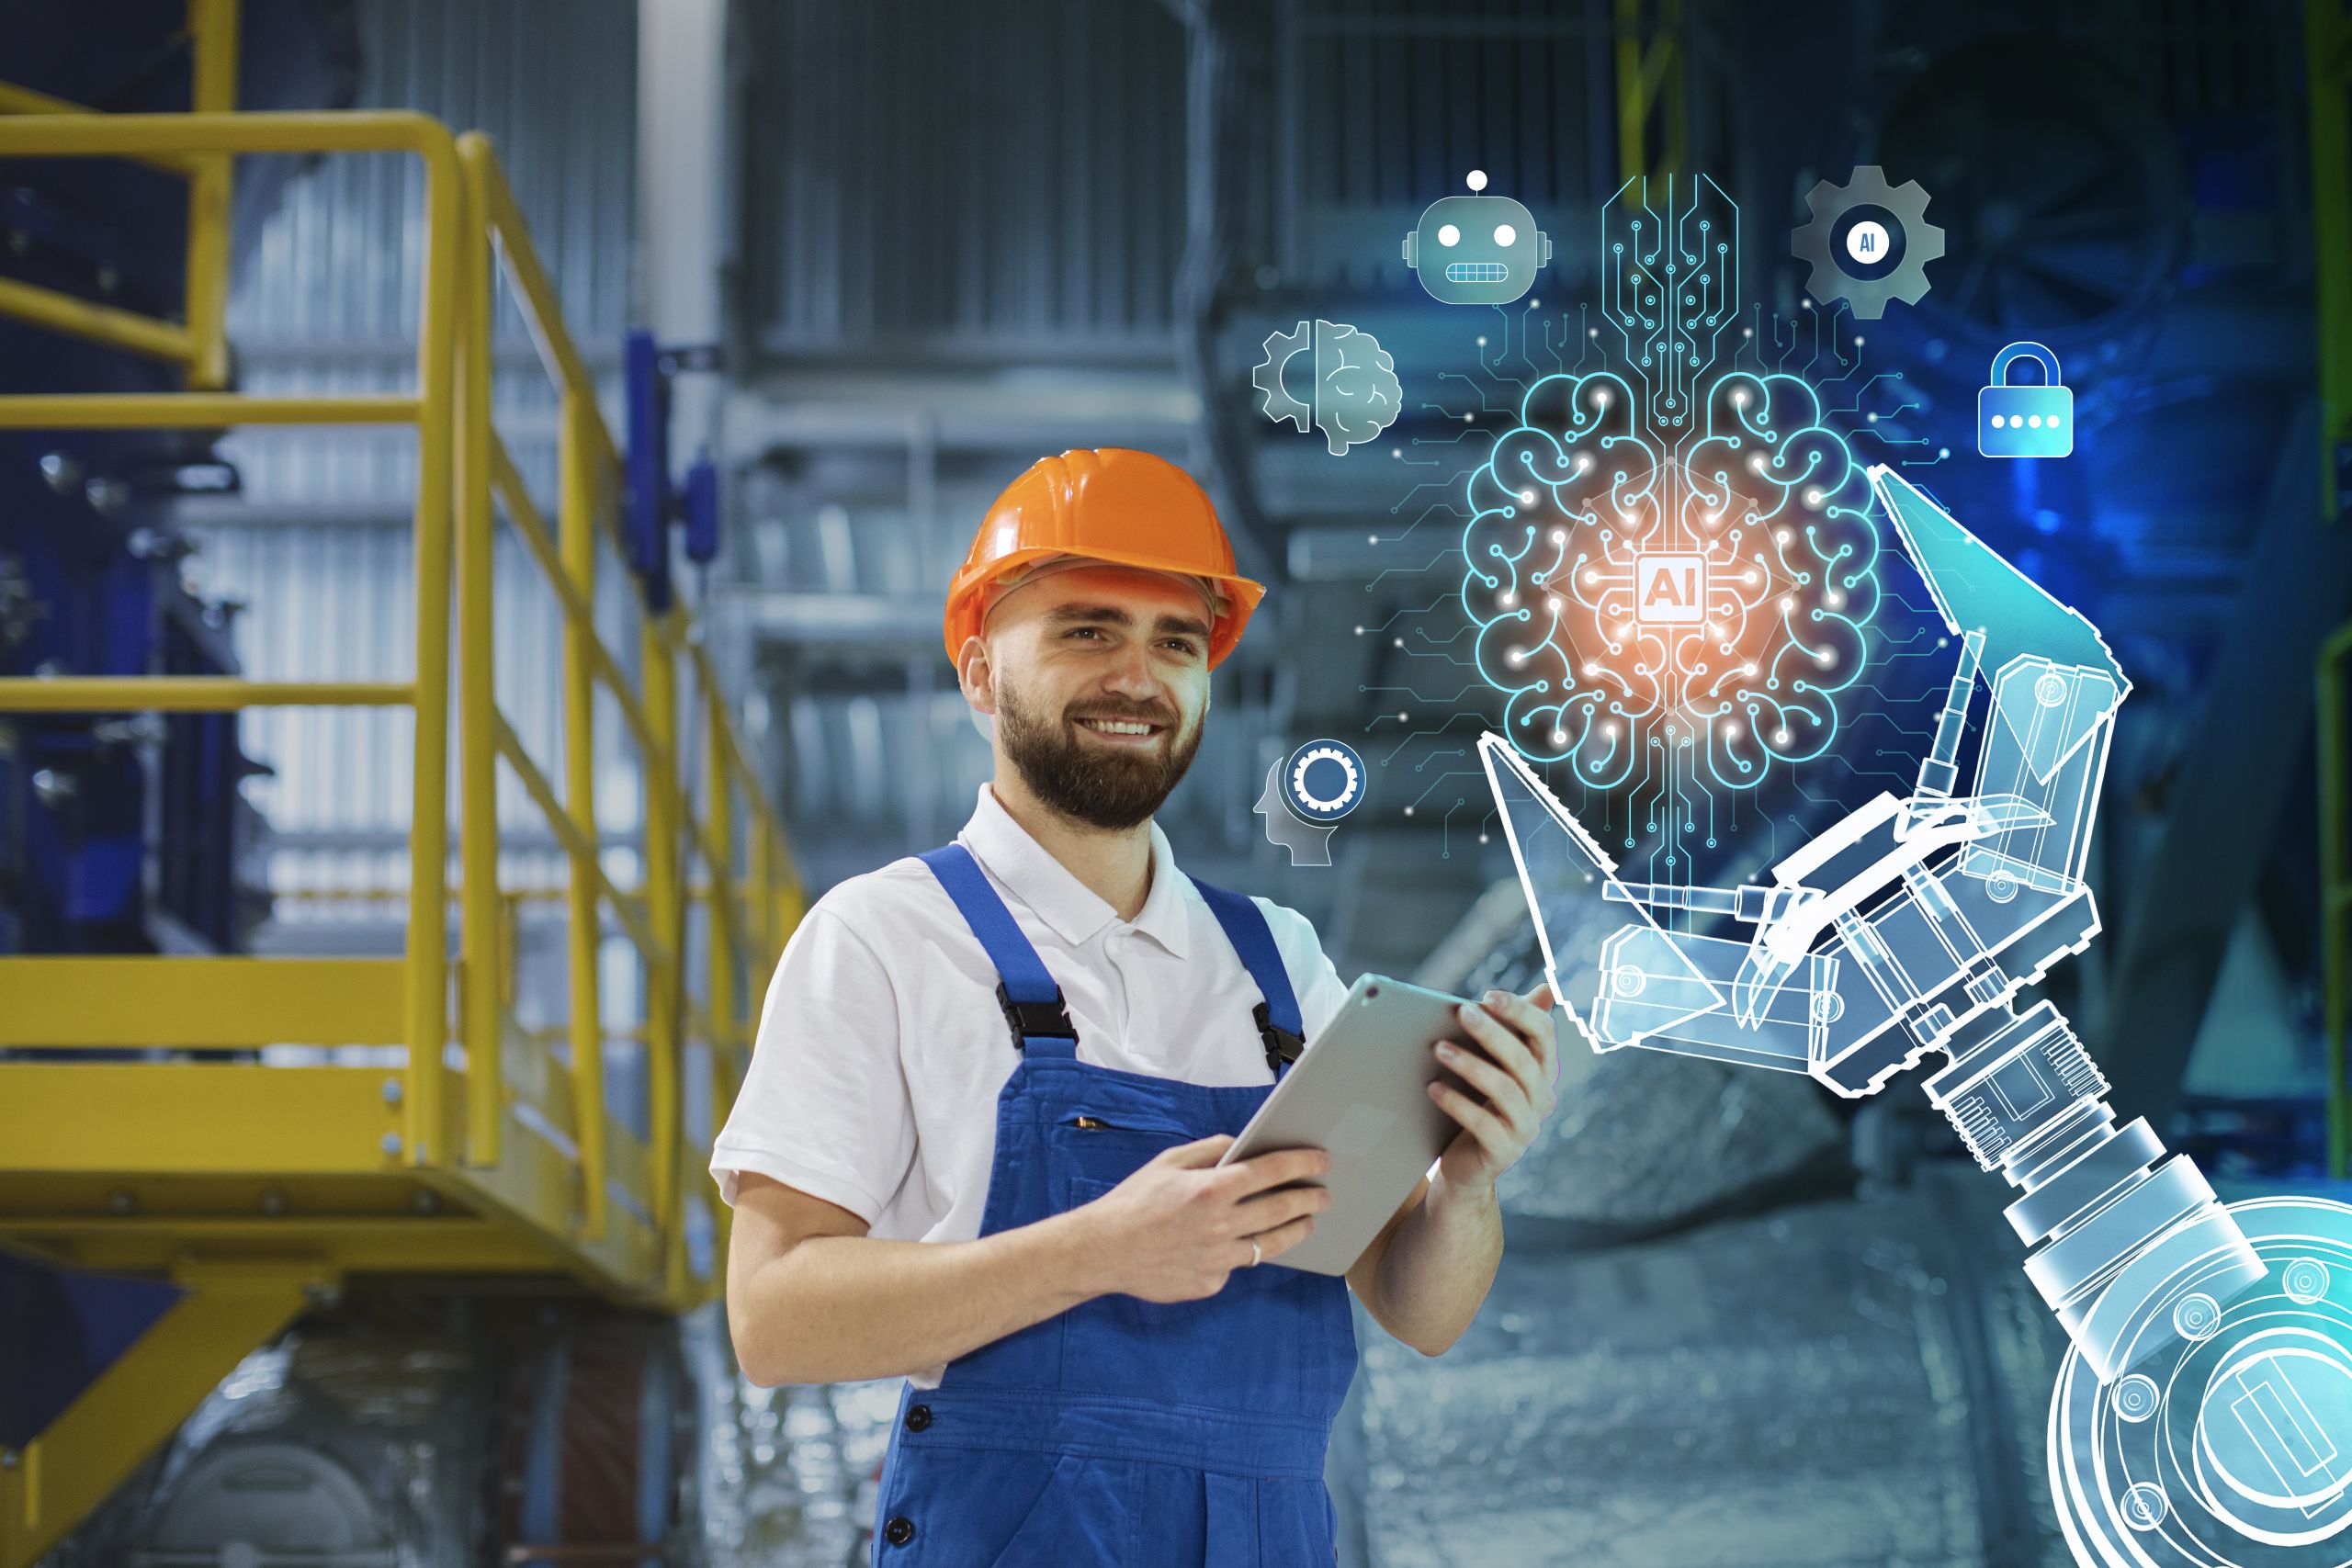 Trabalhador com capacete laranja, roupa azul e prancheta na mão ao lado de elementos gráficos de uma garra de máquina e símbolos de automação industrial.